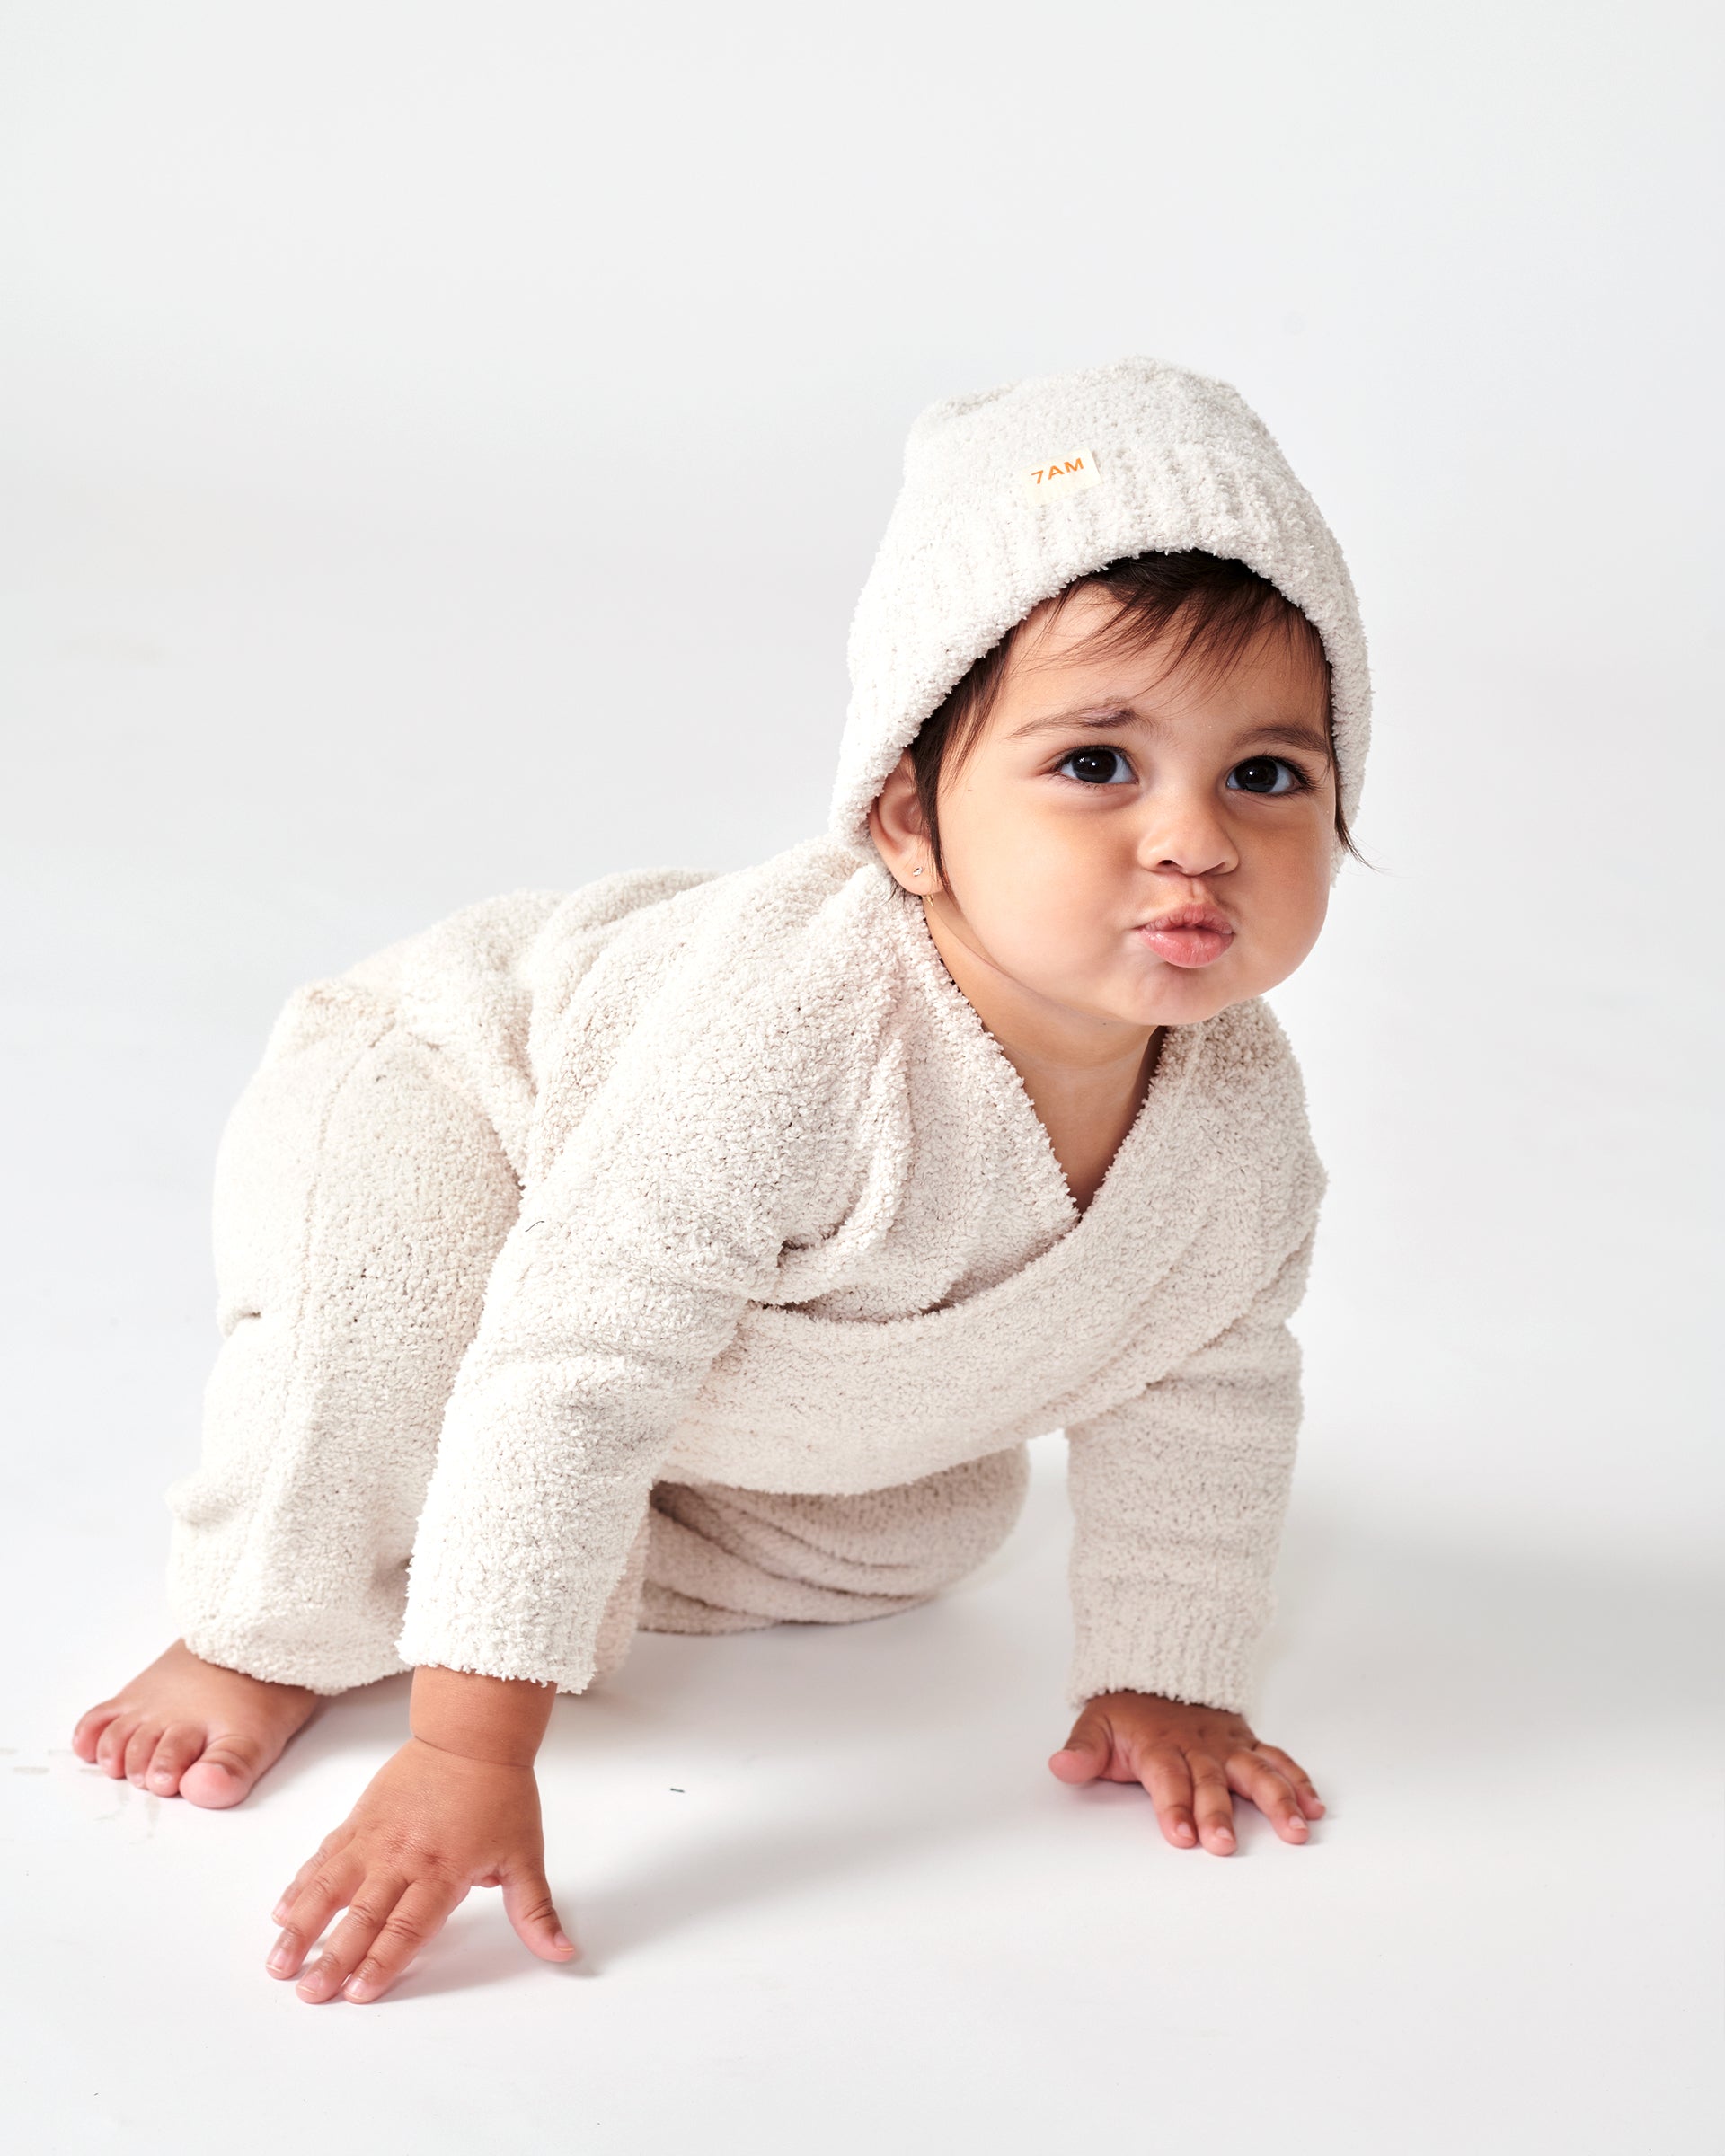 7 A.M. Enfant Fuzzy Wrap Top - Ecru - Twinkle Twinkle Little One